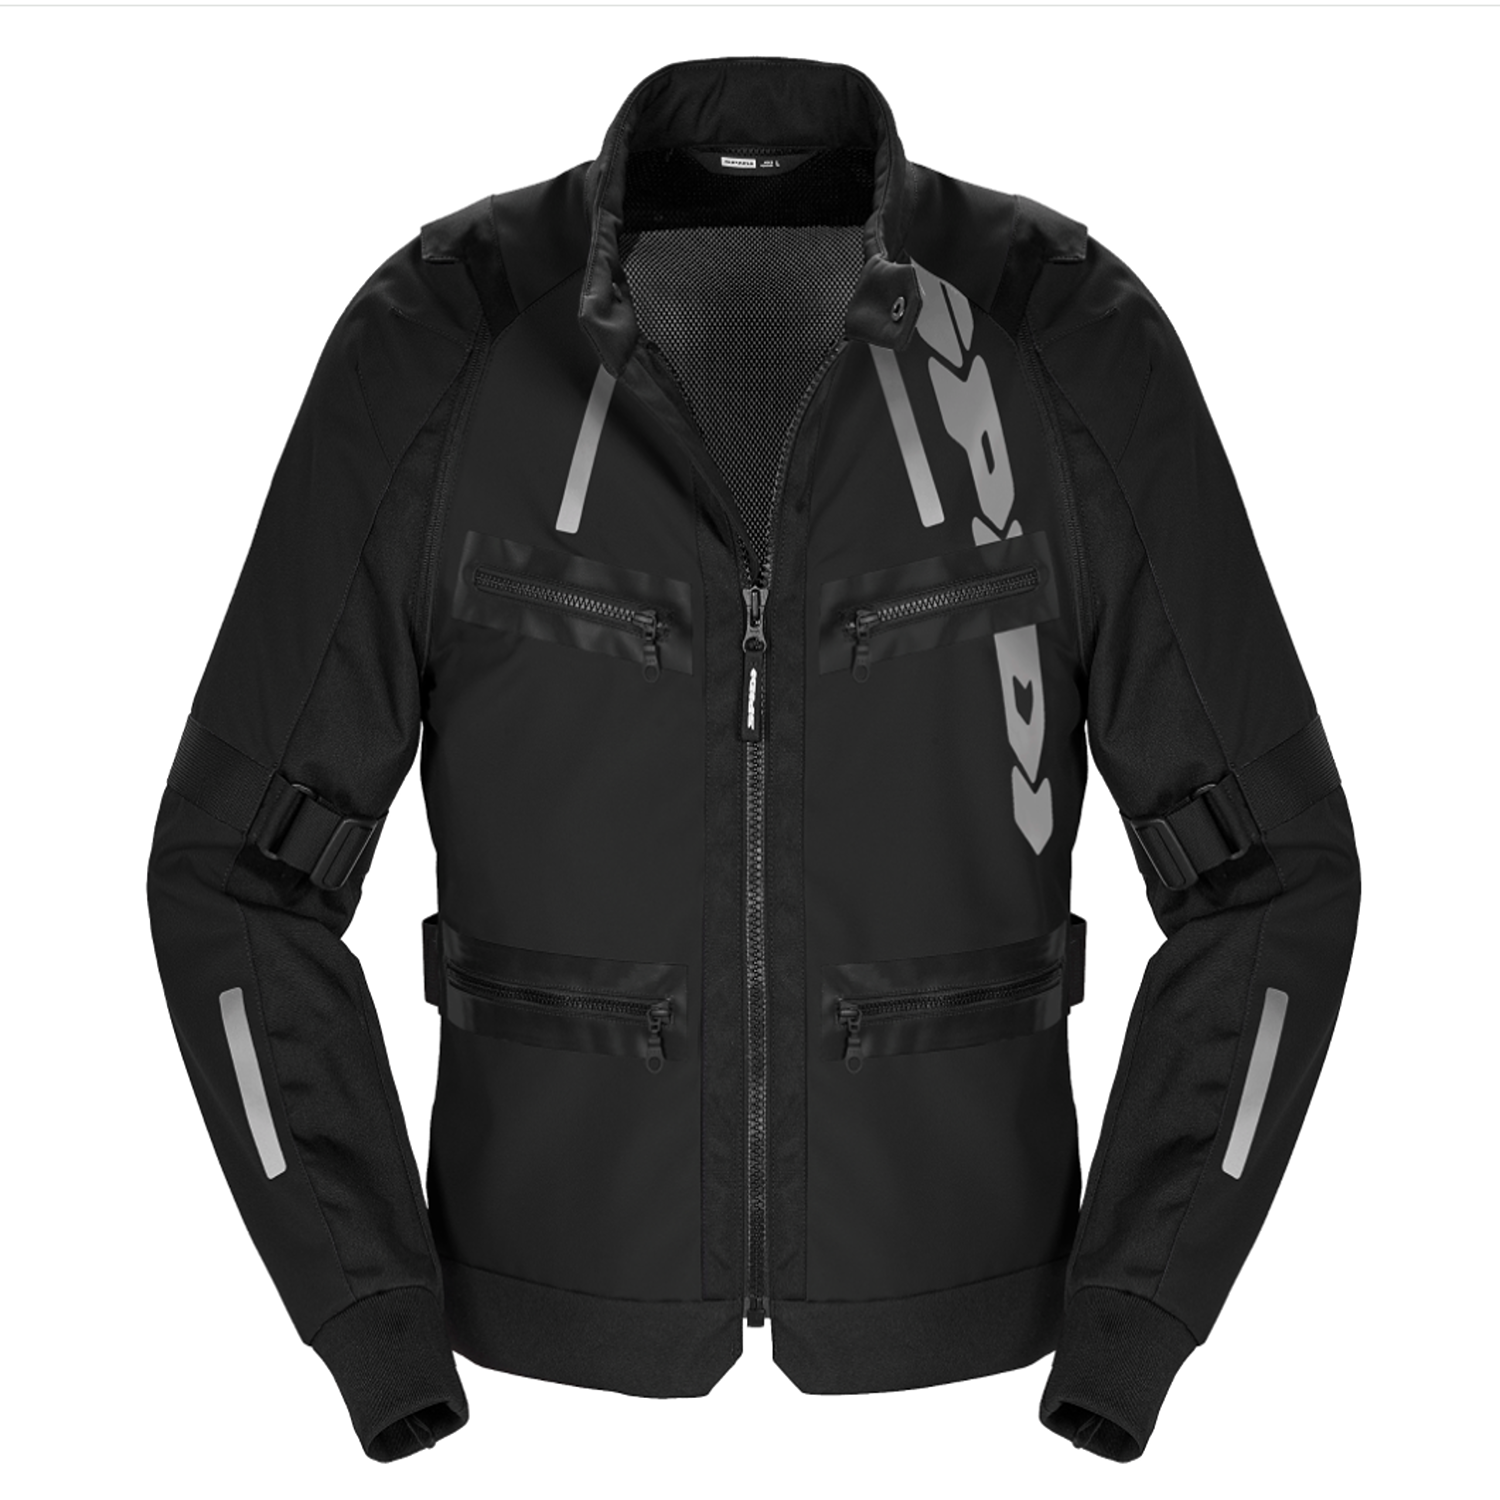 Image of Spidi Enduro Pro Jacket Black Size XL ID 8030161485028